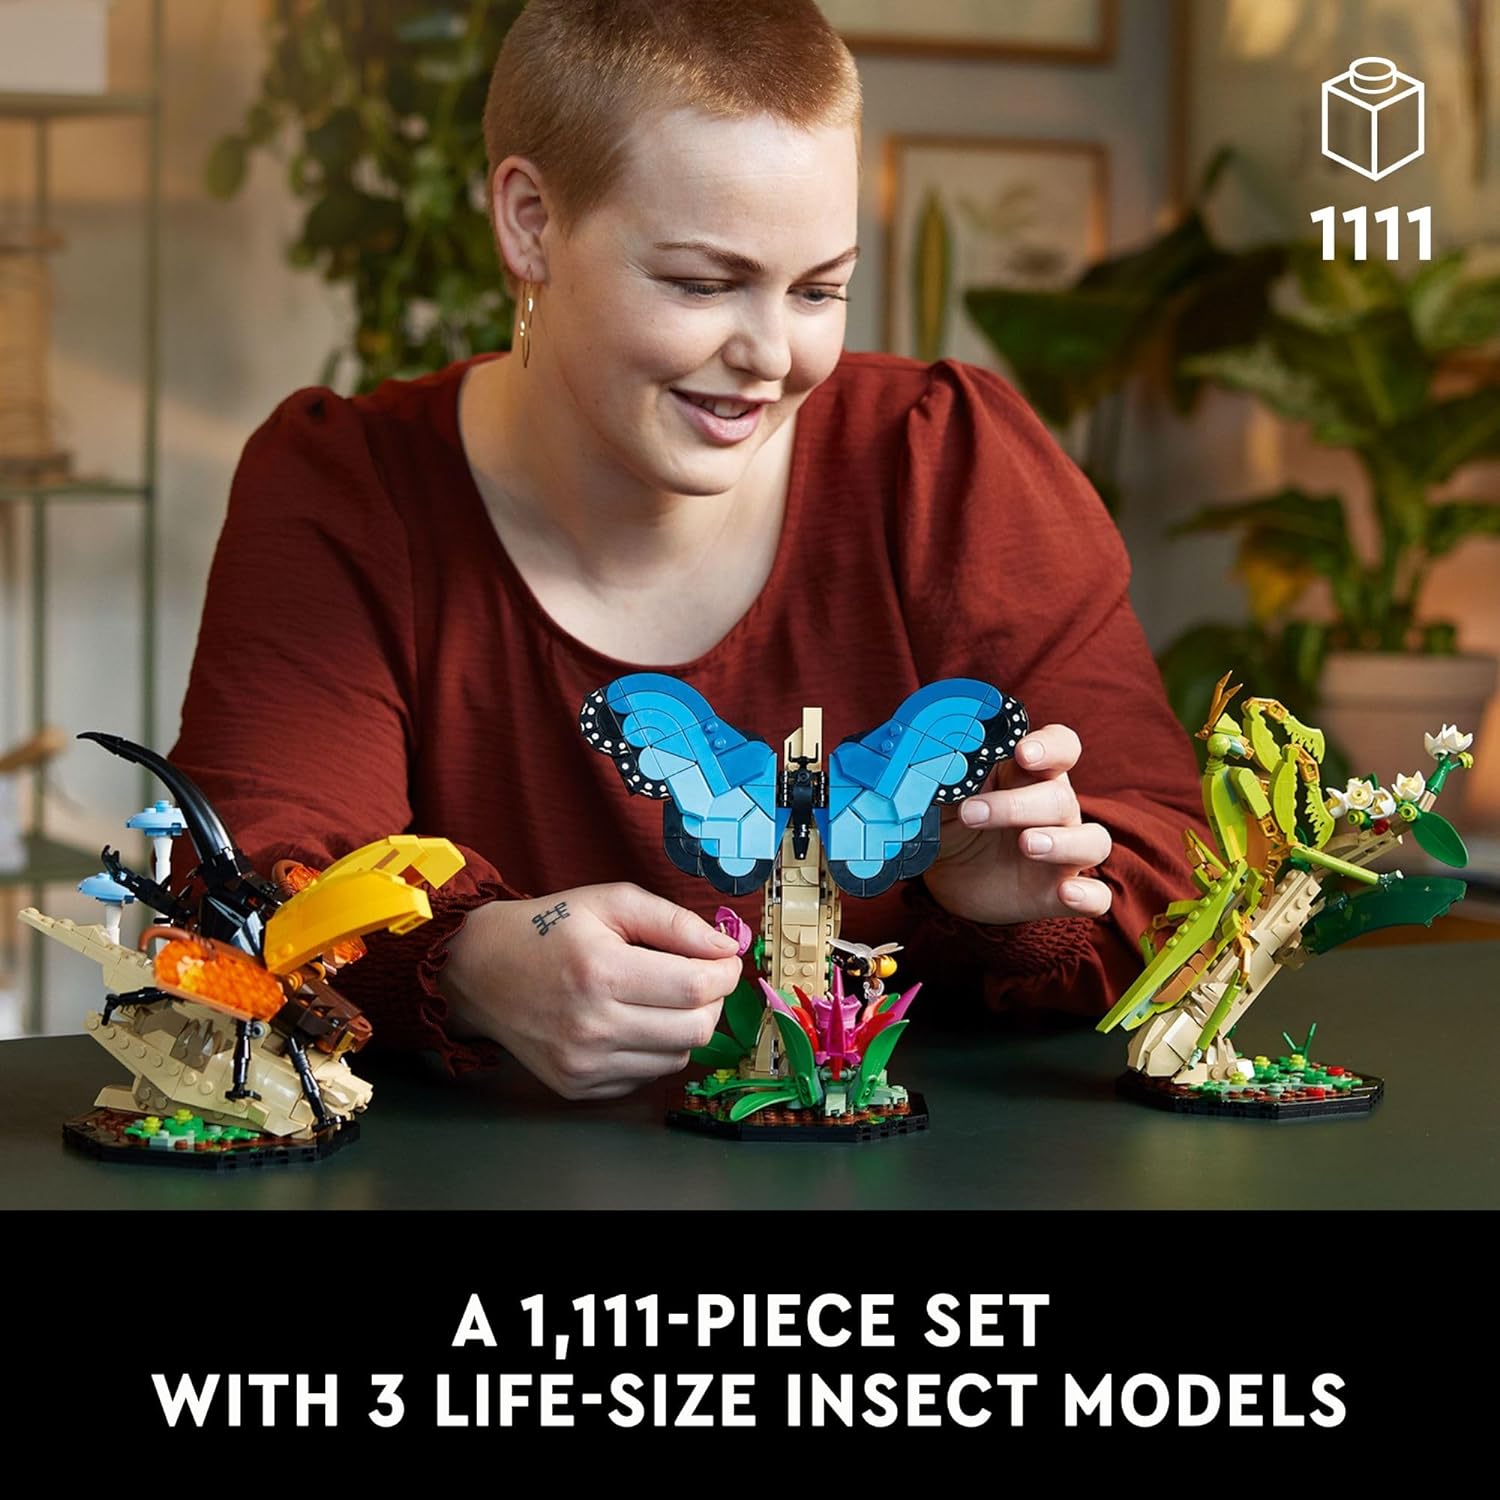 مجموعة الحشرات من ليجو 21342 آيدياز، هدية ممتعة لمحبي الطبيعة، مع نماذج عرض فراشة مورفو الزرقاء بالحجم الطبيعي، وخنفساء هرقل والسرعوف الصينية، ومجموعة بناء الحشرات وديكور الطبيعة